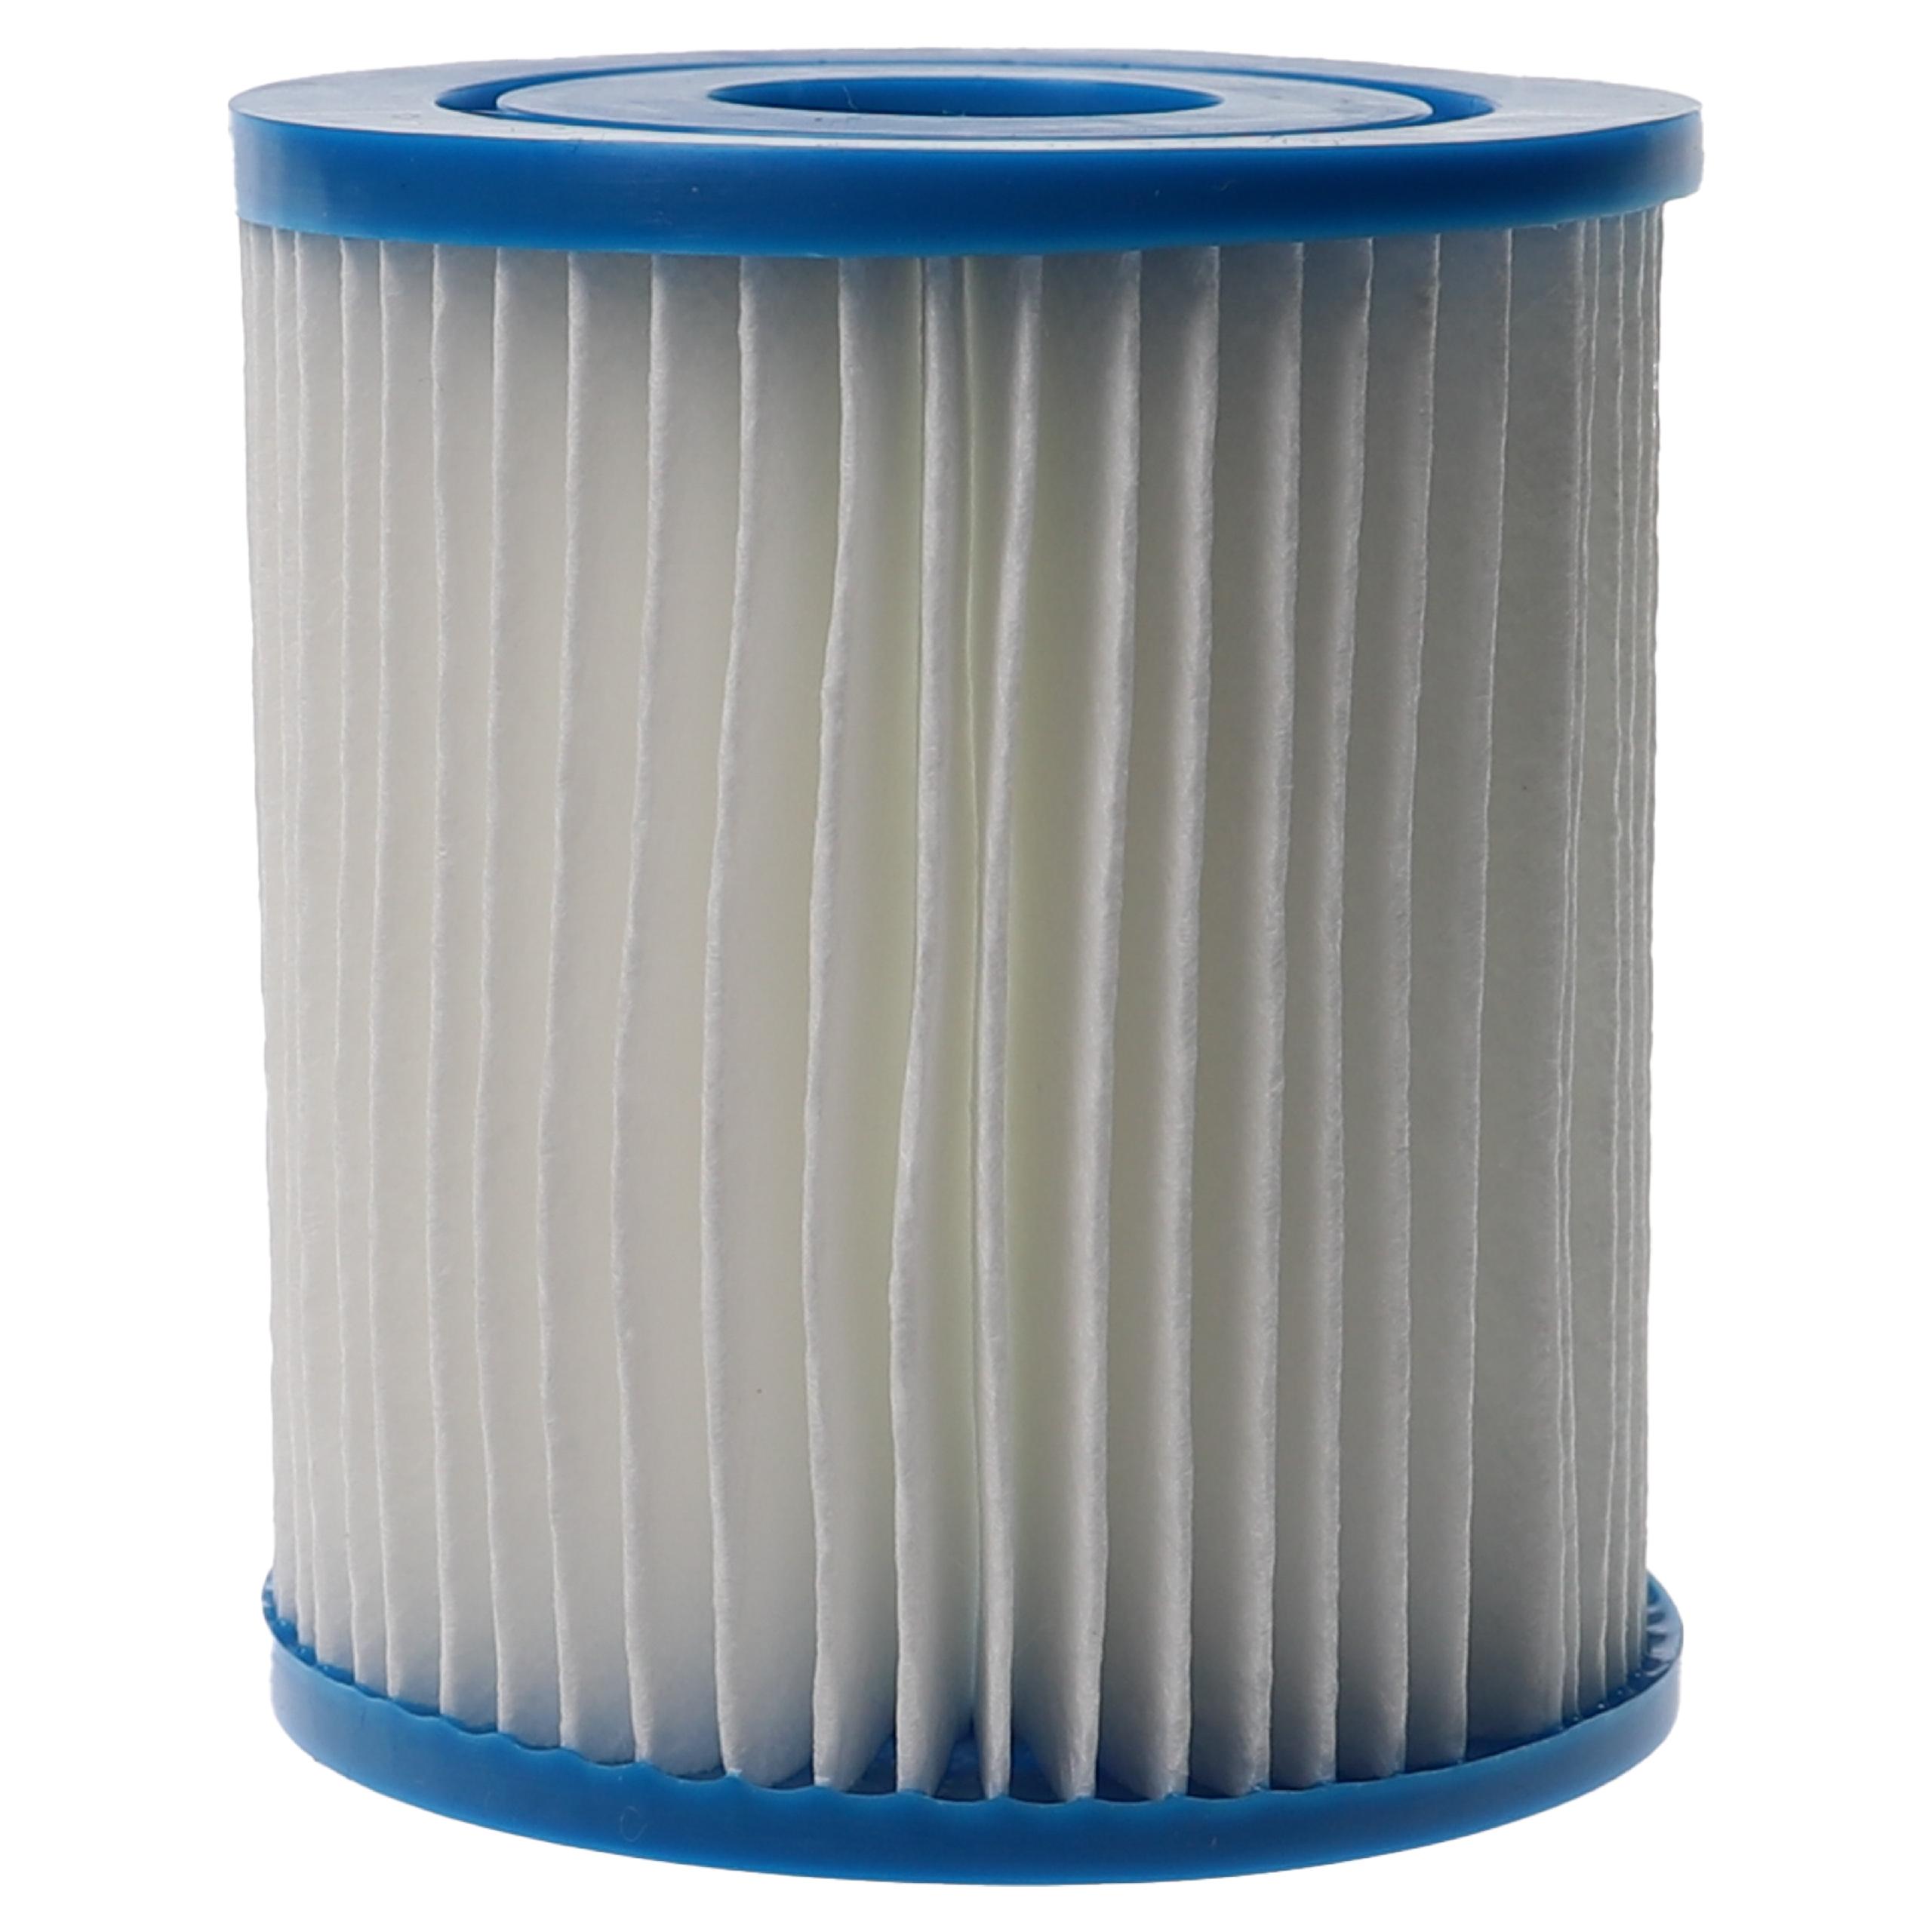 2x Filtres à eau remplace APC C7490 pour piscine, pompe de filtration Intex - Cartouche filtre